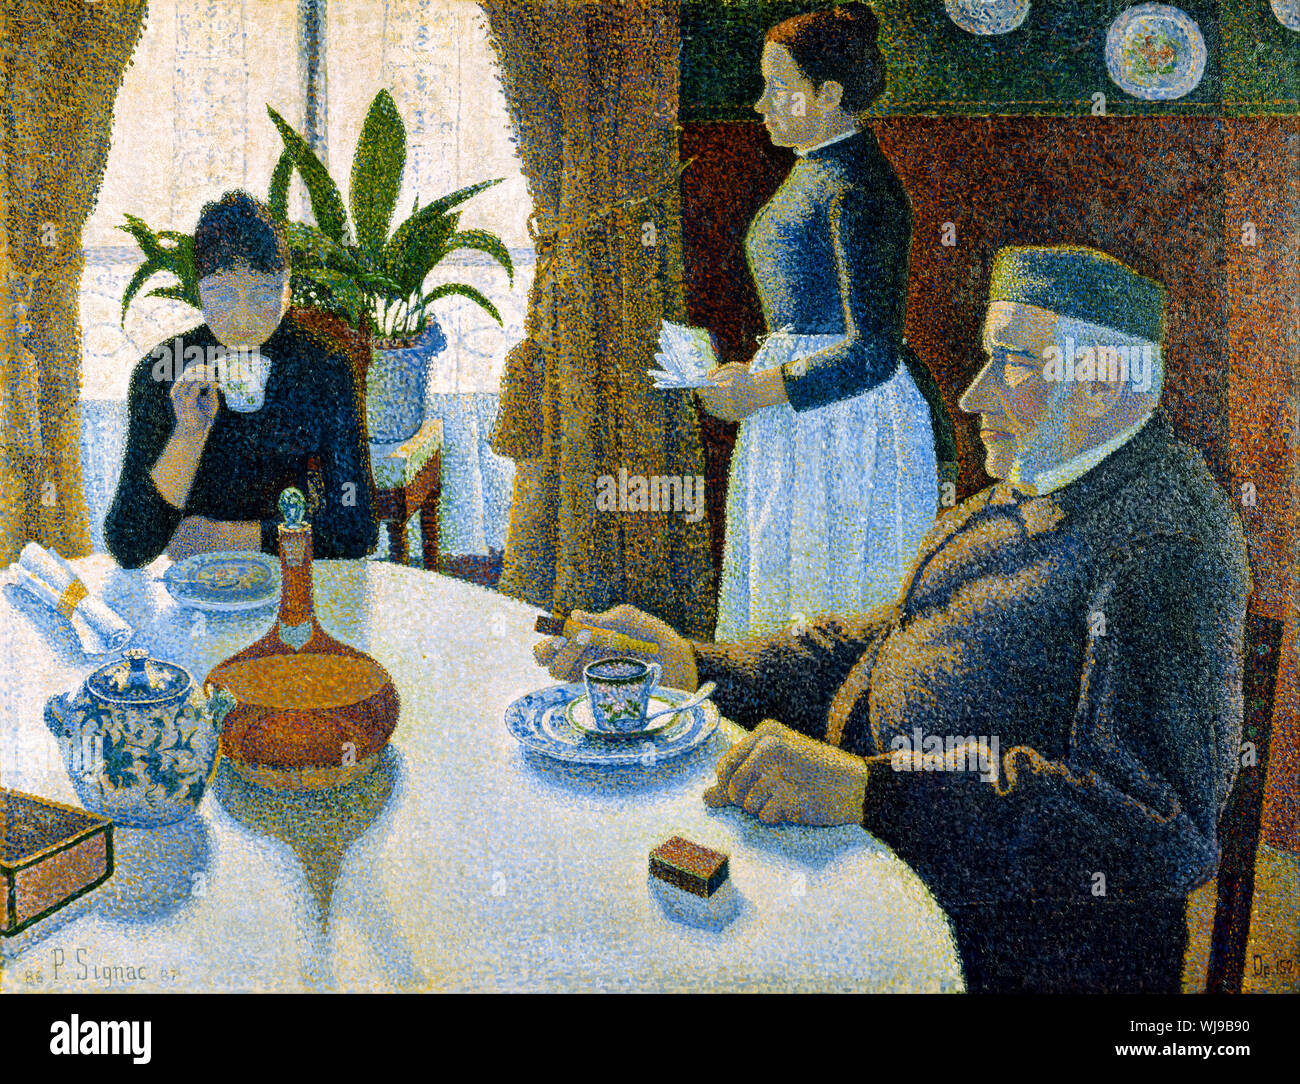 Paul Signac, la salle à manger, peinture, 1886-1887 Banque D'Images